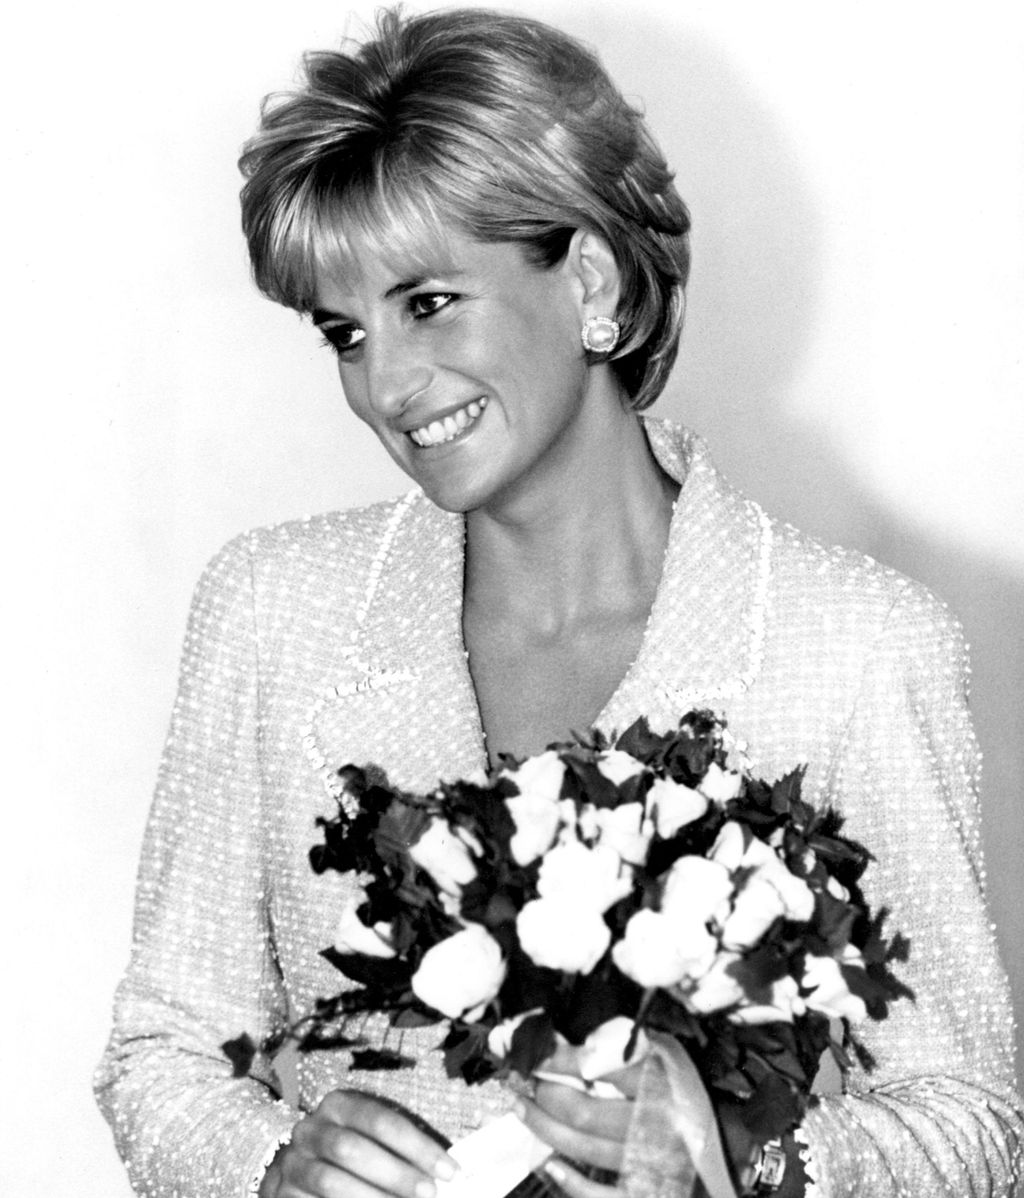 Diana de Gales era tremendamente querida por los británicos